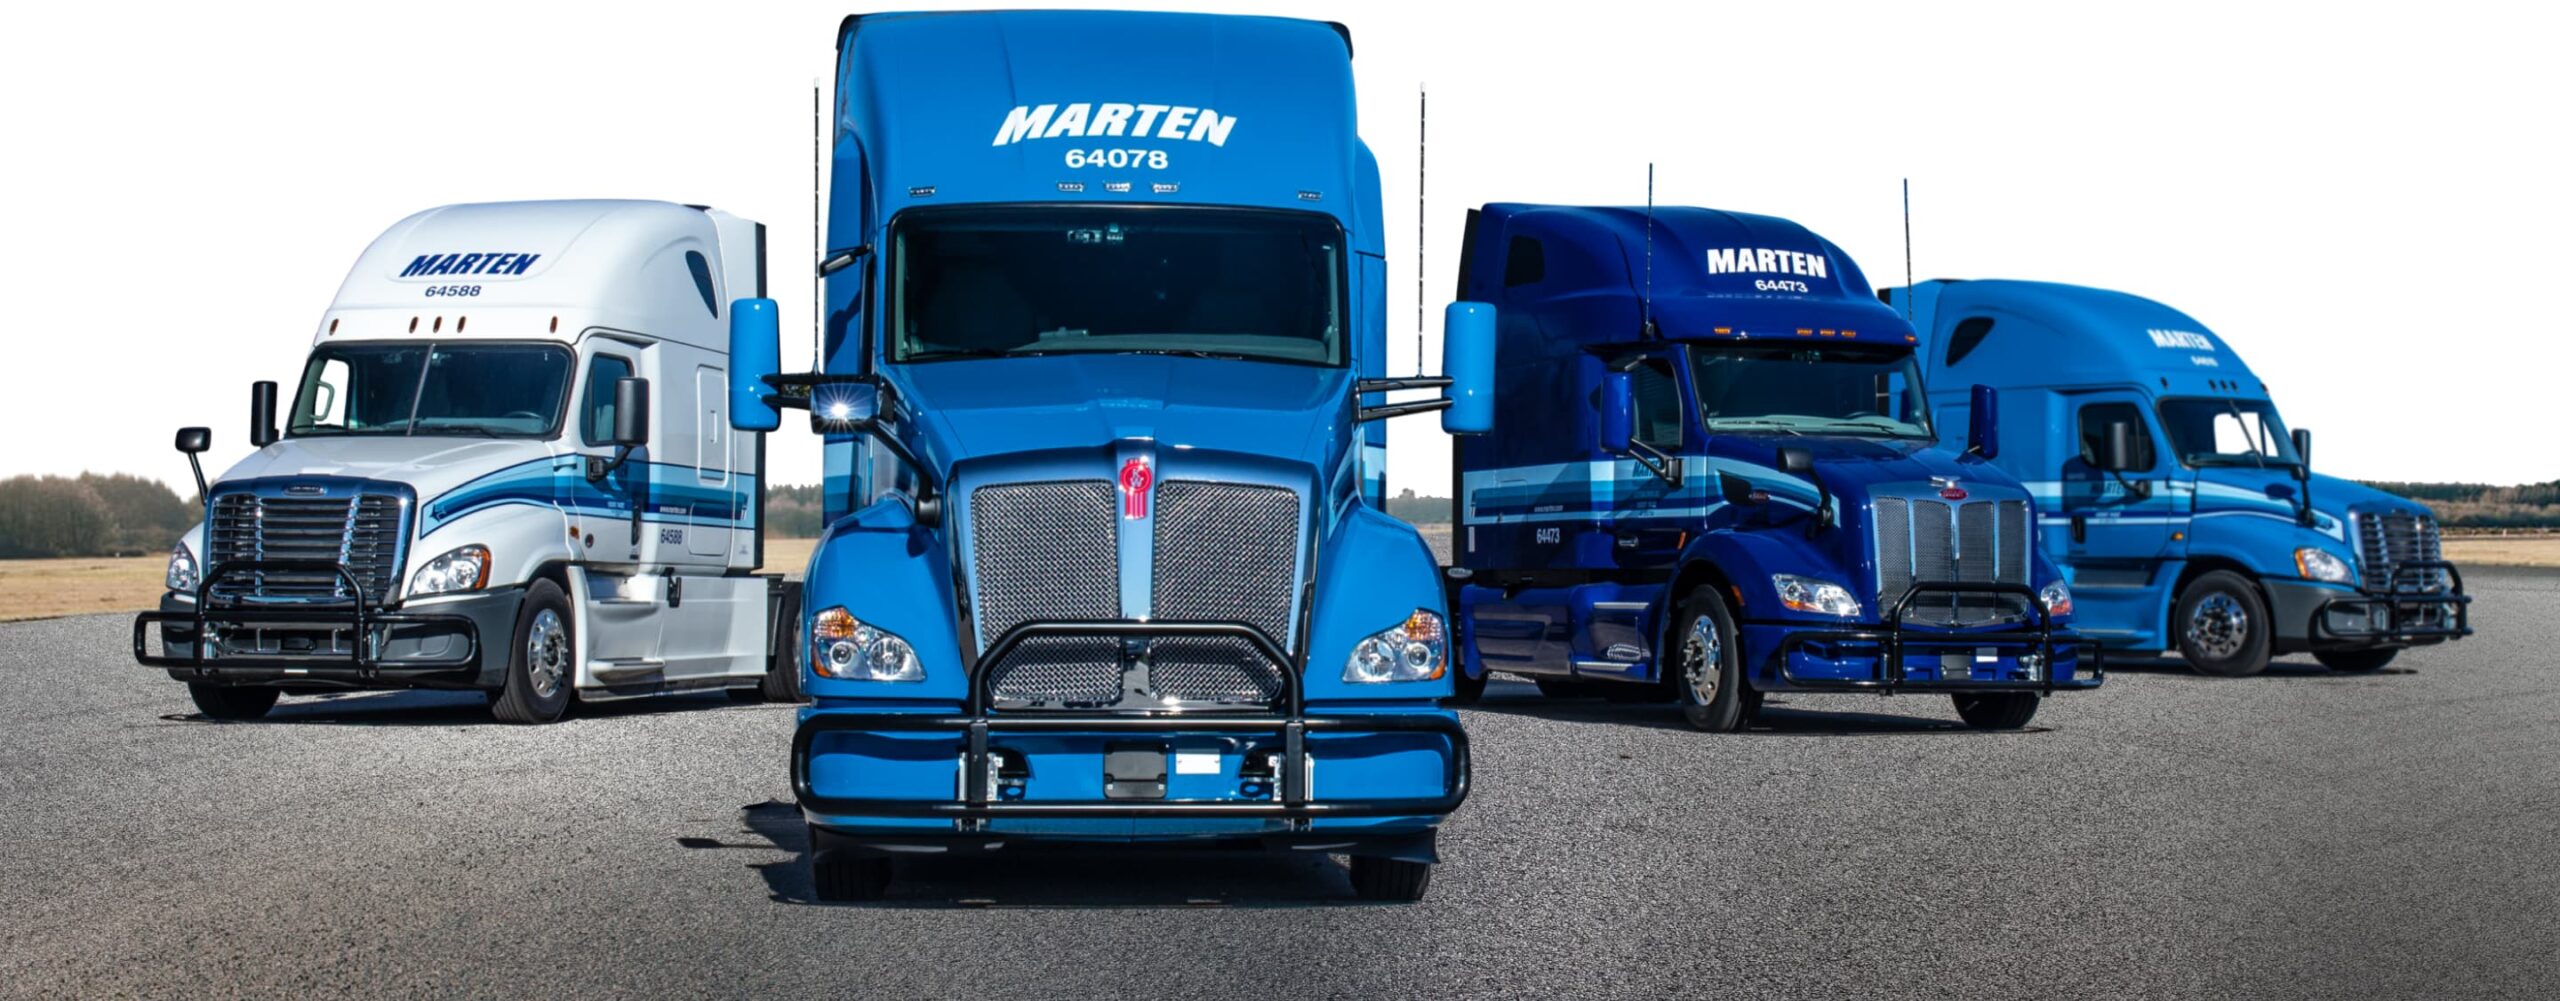 Four Marten trucks facing viewer